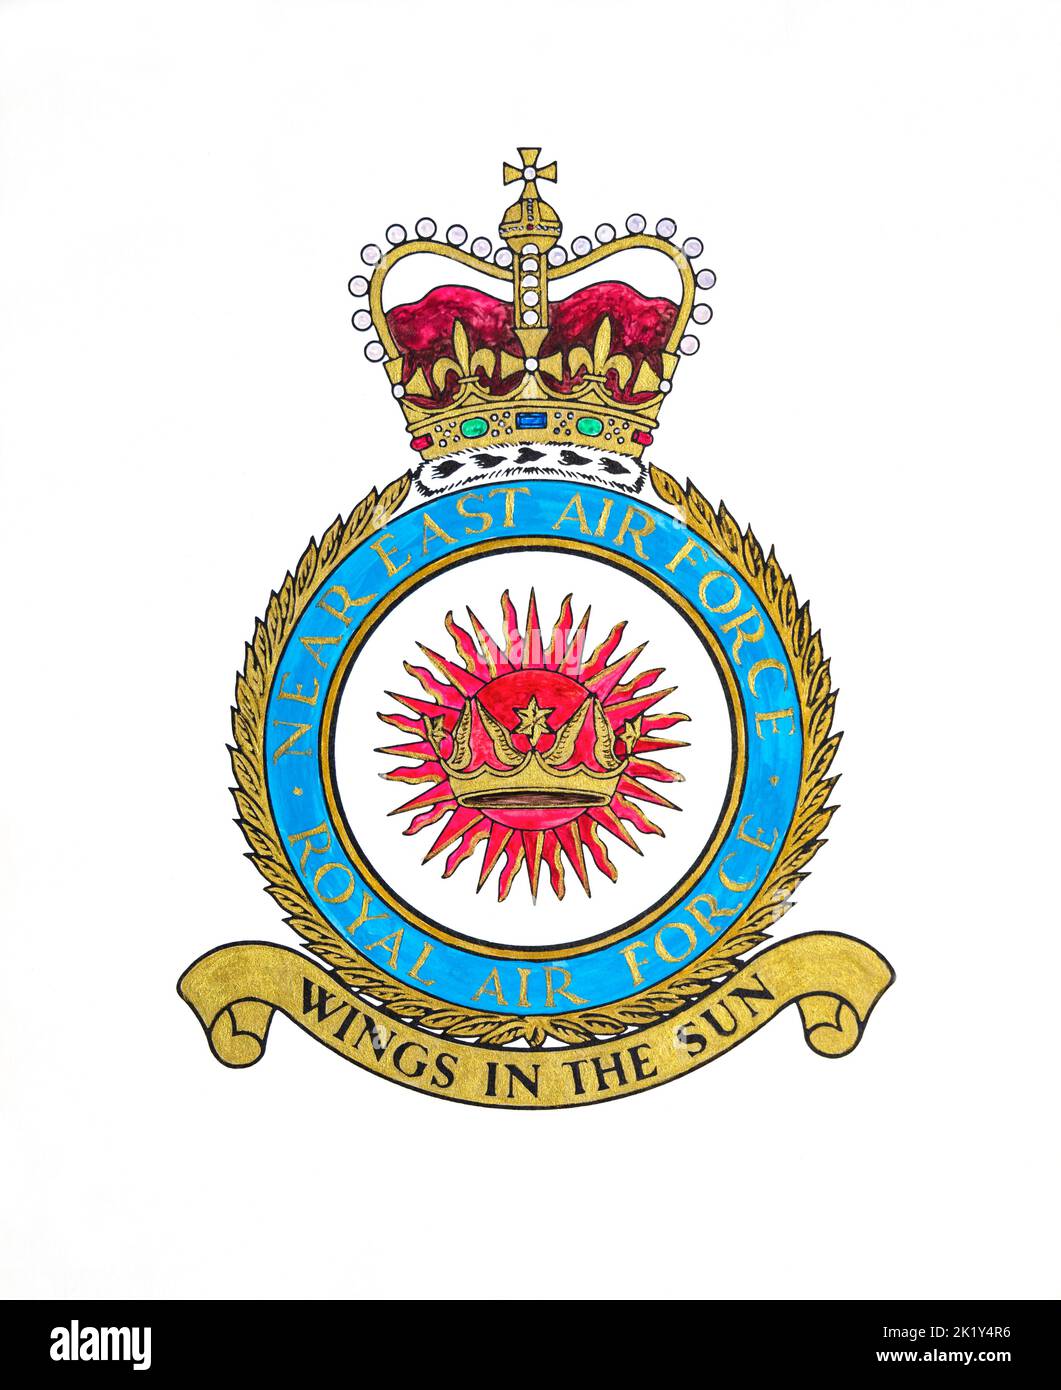 Handbemaltes Wappen der Royal Air Force, Naher Osten Air Force von Command Illustrator CPL Leonard Webb RAF, basierend auf JARIC, RAF Episkopi, 1970.Zypern Stockfoto